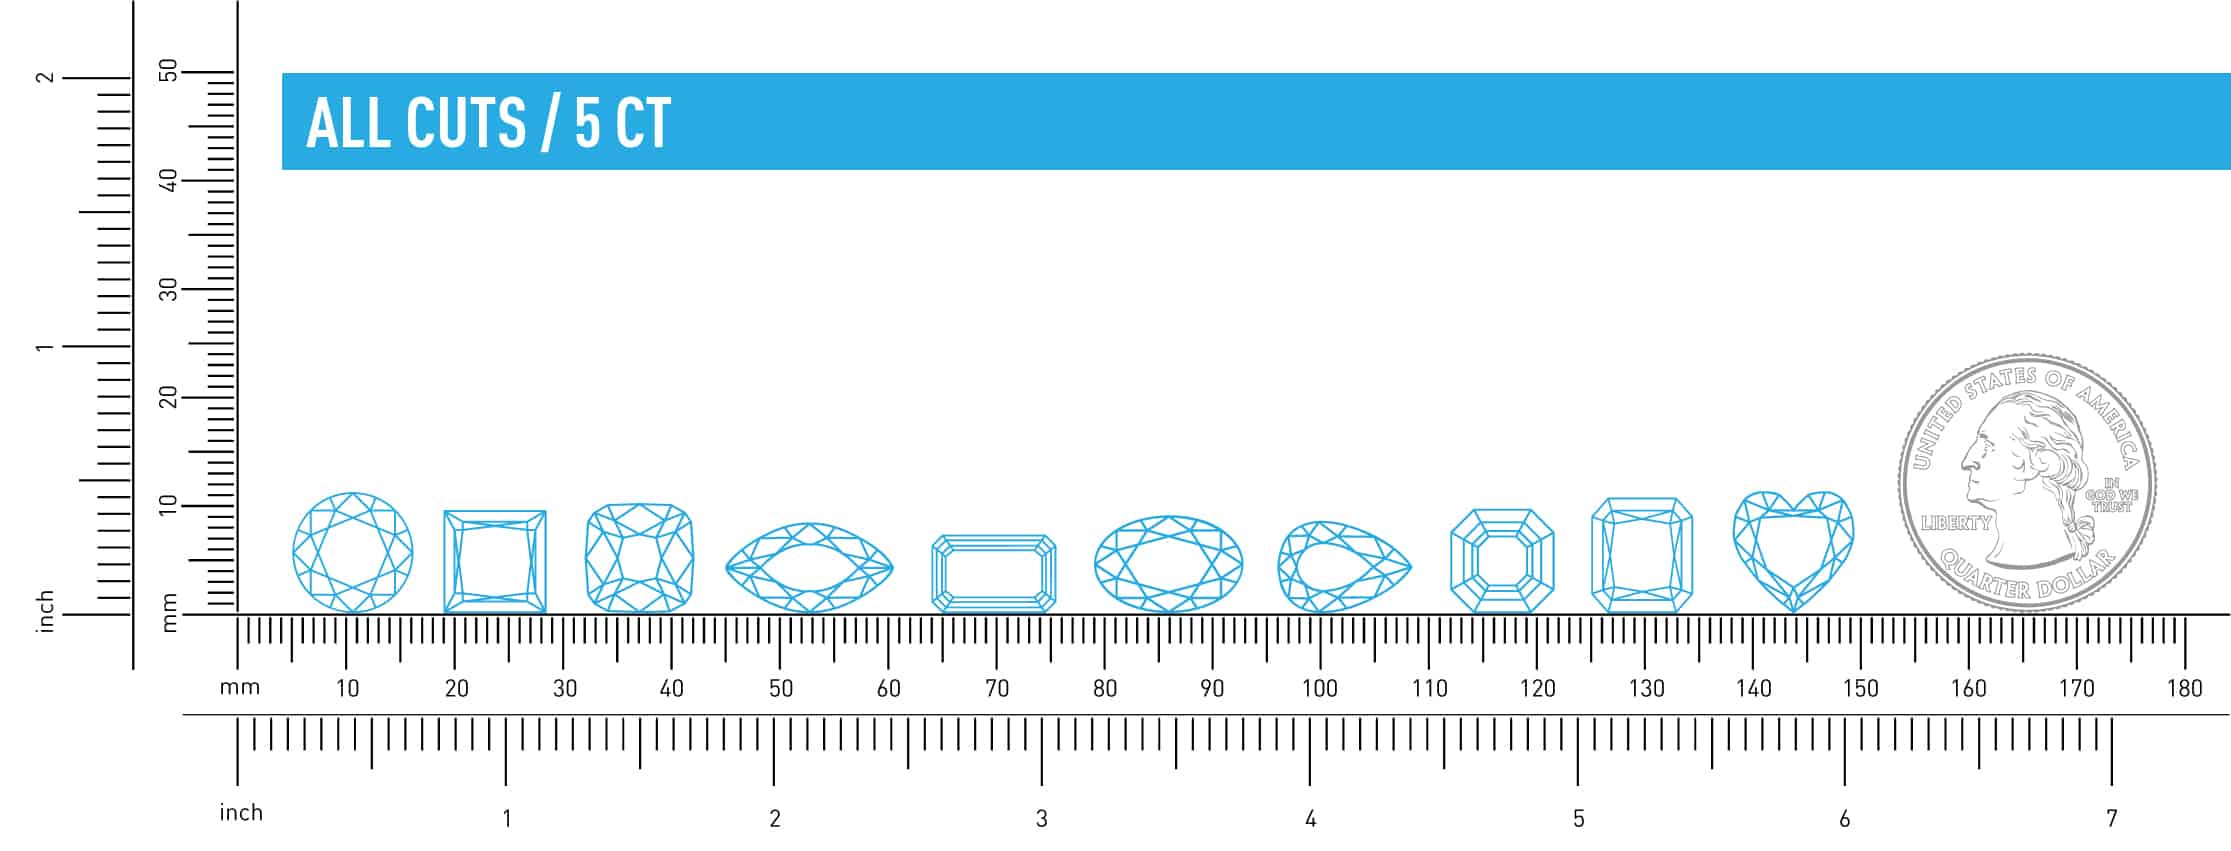 All cuts size comparison of 5ct diamonds